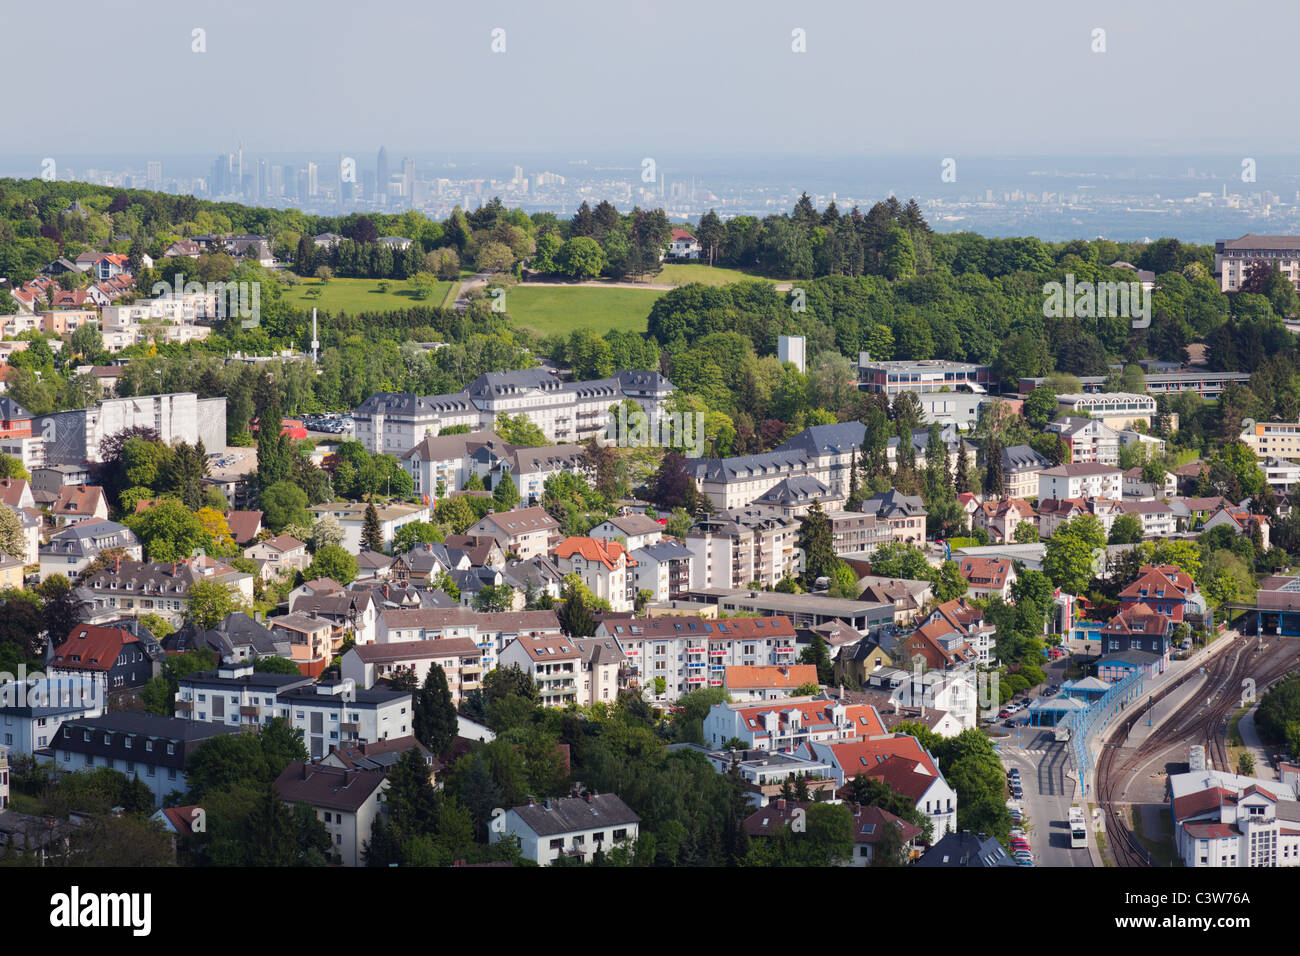 Die wohlhabenden Vororten rund um Frankfurt mit der Stadt in der Ferne. Königstein liegt in den Hügeln des Taunus. Stockfoto